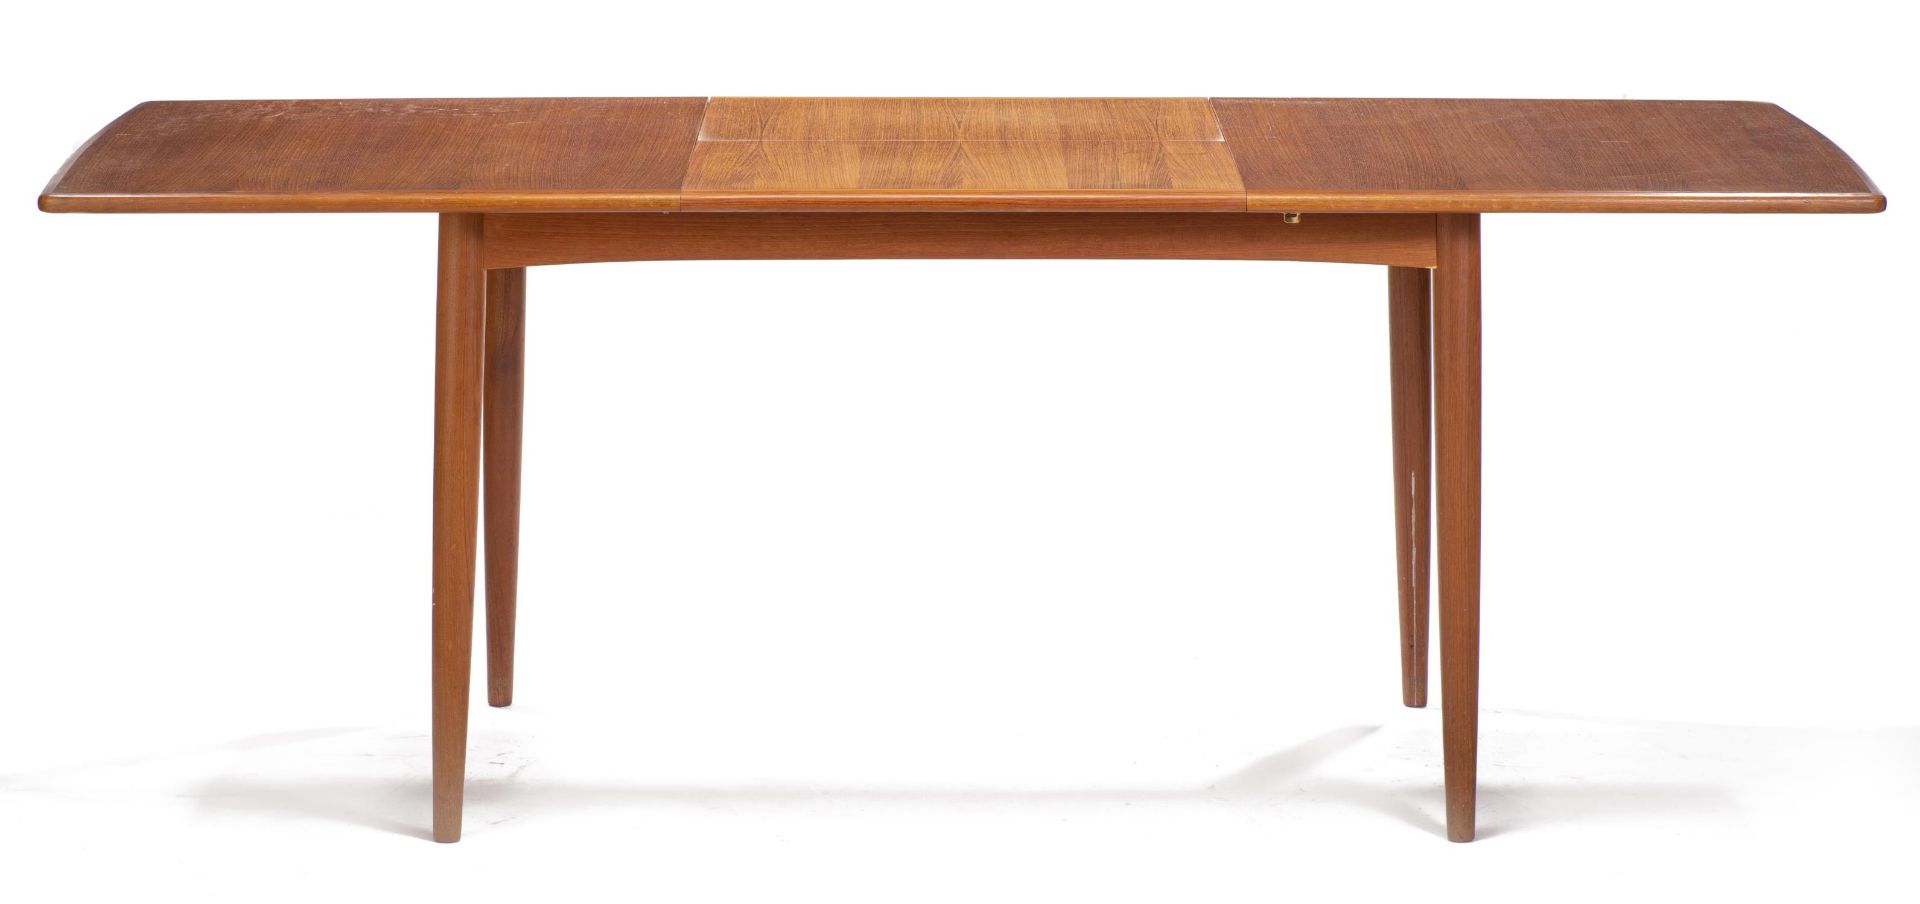 Table rectangulaire extensible en teck de style scandinave, avec rallonge dépliante [...] - Bild 3 aus 6